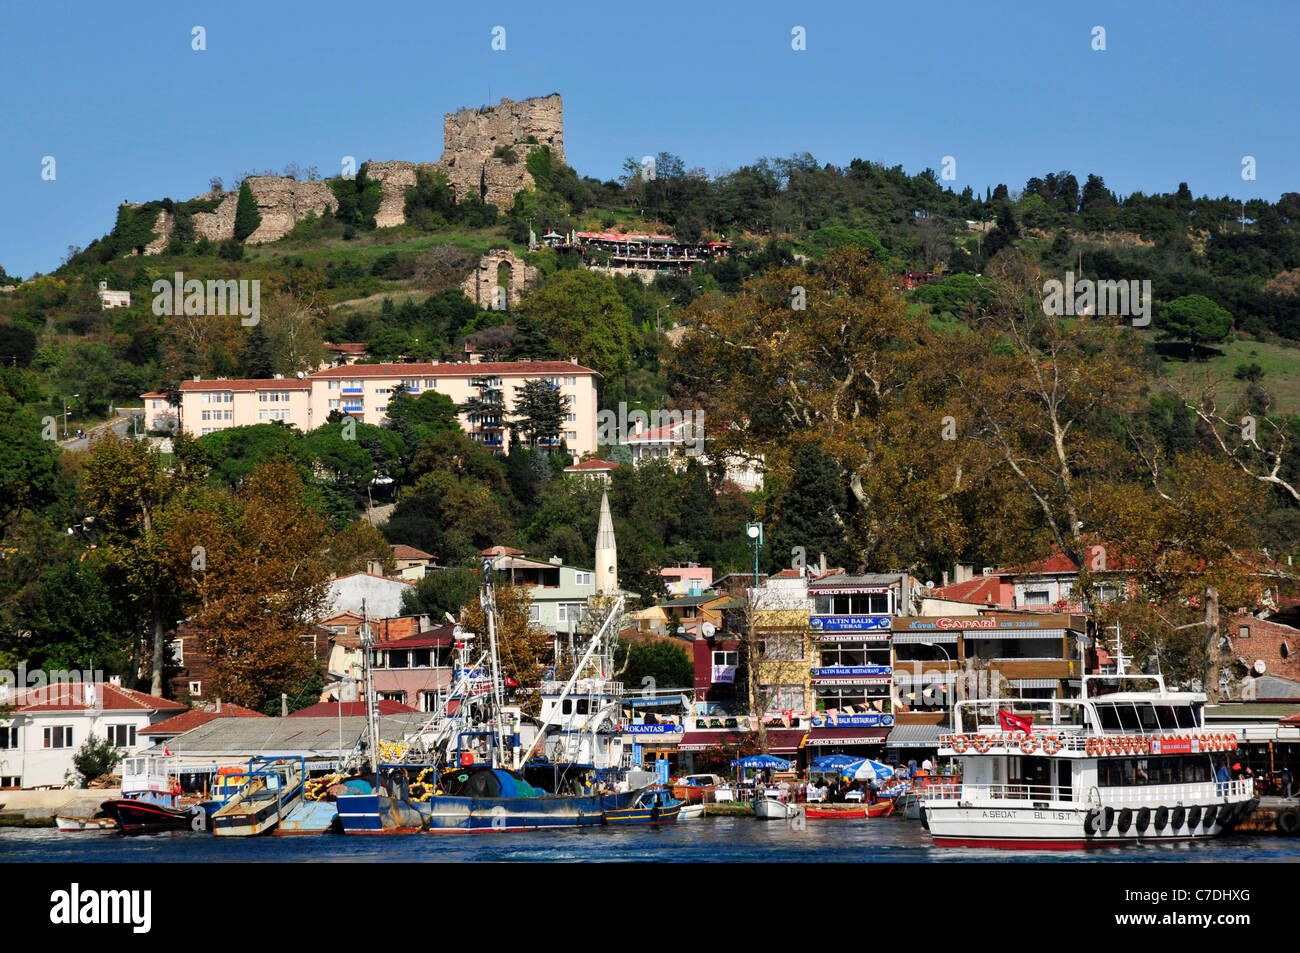 Genovese château se dresse au-dessus de la petite pêche et de village touristique d'Anadolu Kavagi près de la mer Noire. Le détroit du Bosphore. Banque D'Images